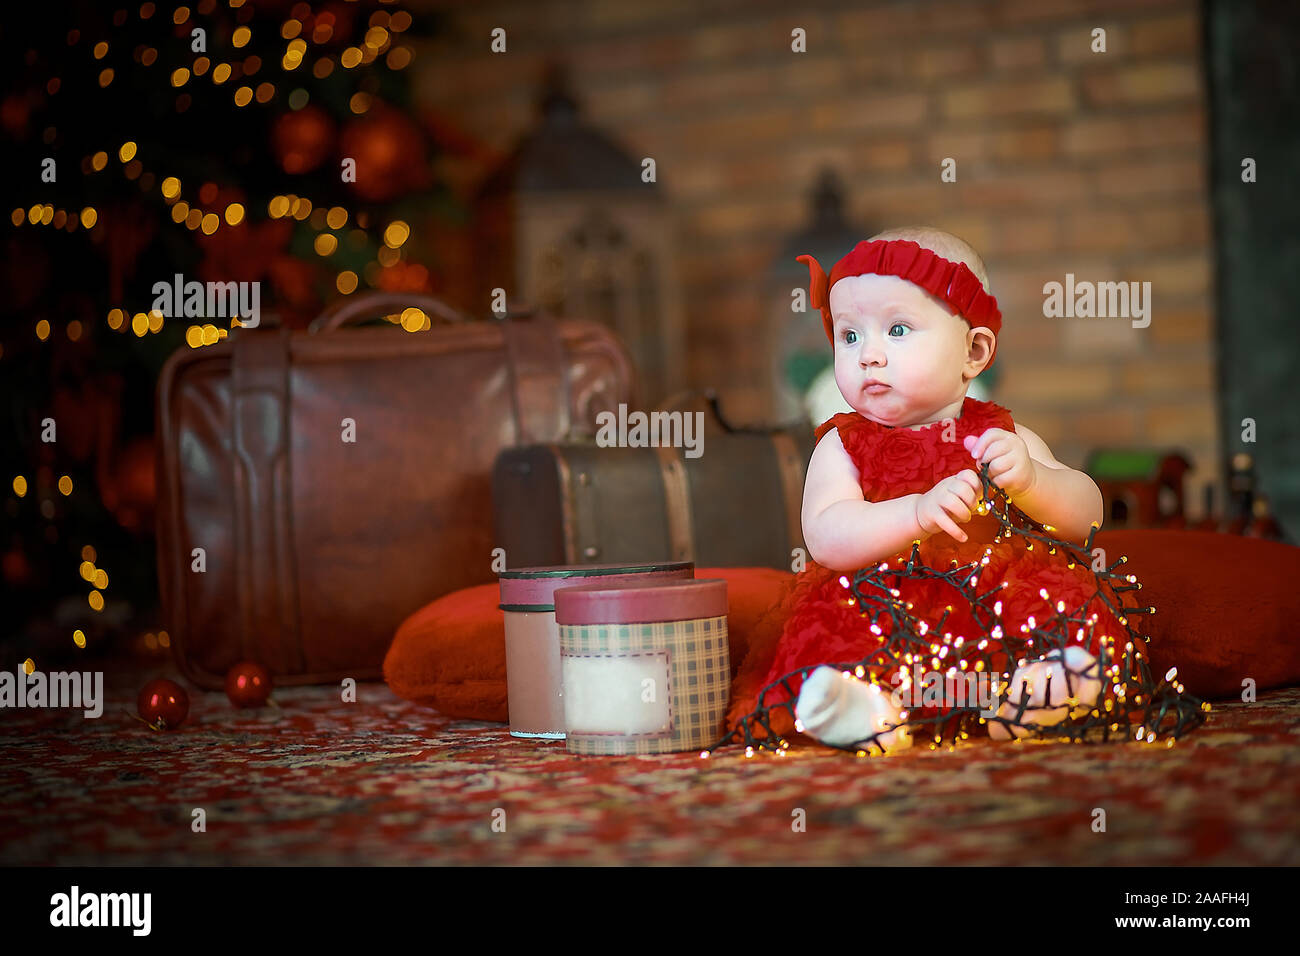 Petite fille en robe rouge à l'arrière-plan de Noël arbre de Noël est titulaire d'garland en mains. bébé 6 mois fête Noël. Jouets dangereux. Banque D'Images